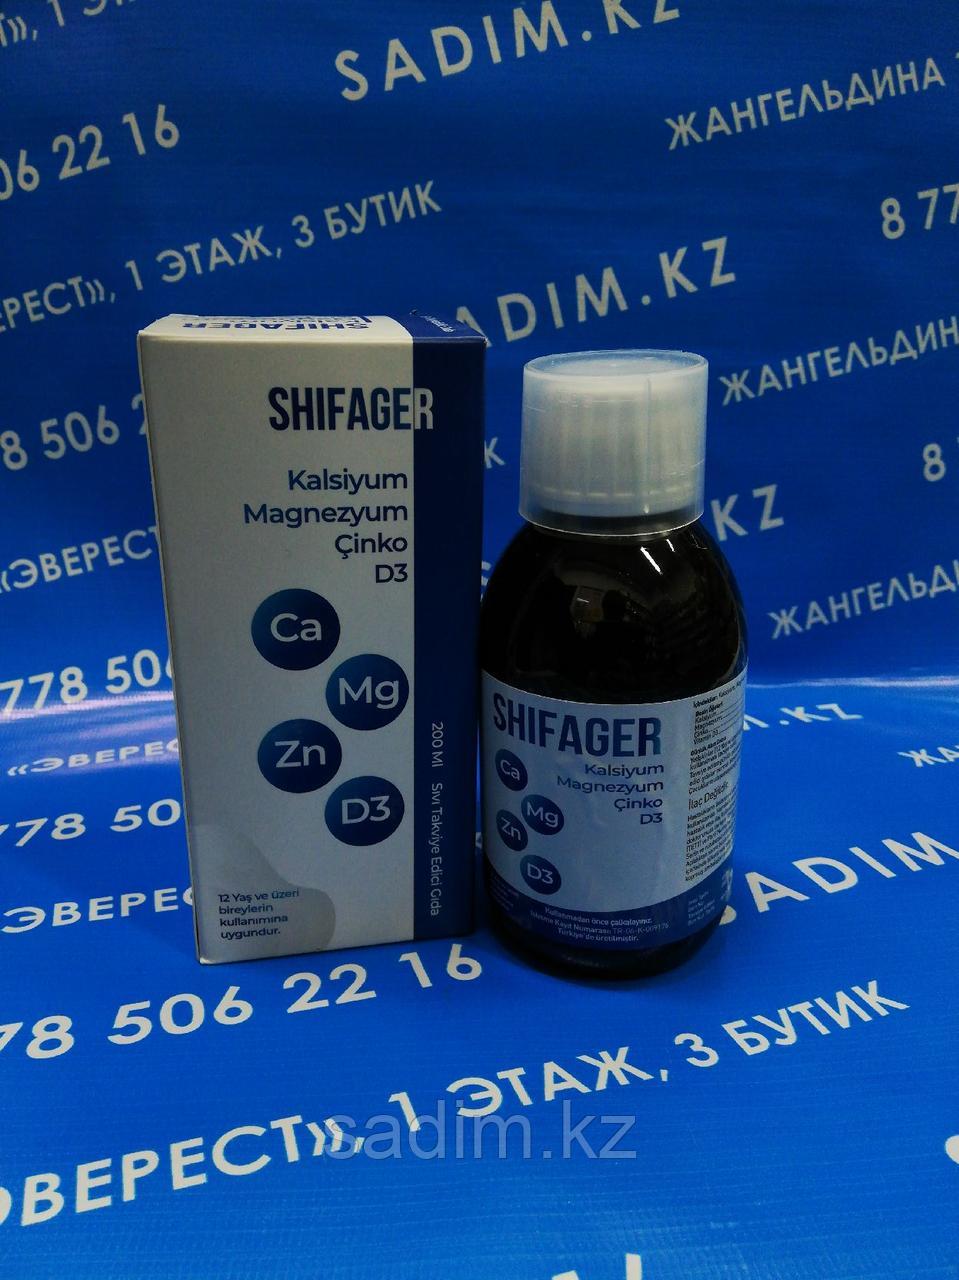 Шифагер - Shifager 200 ml